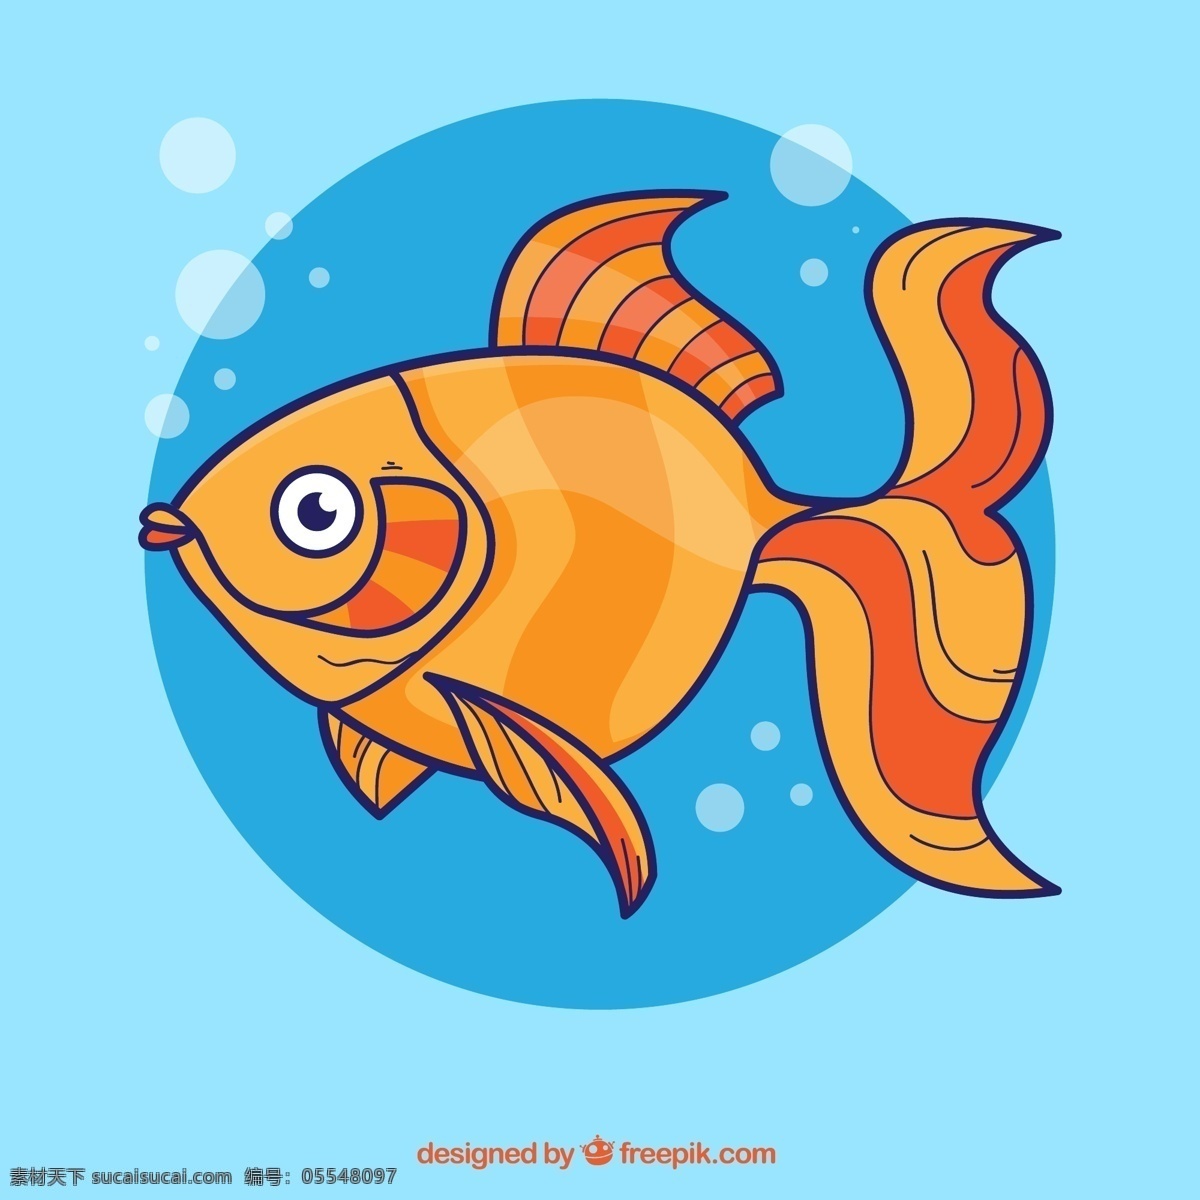 金鱼 橙色 气泡 卡通 海洋生物 插画 背景 海报 画册 矢量动物 生物世界 鱼类 平面素材 青色 天蓝色